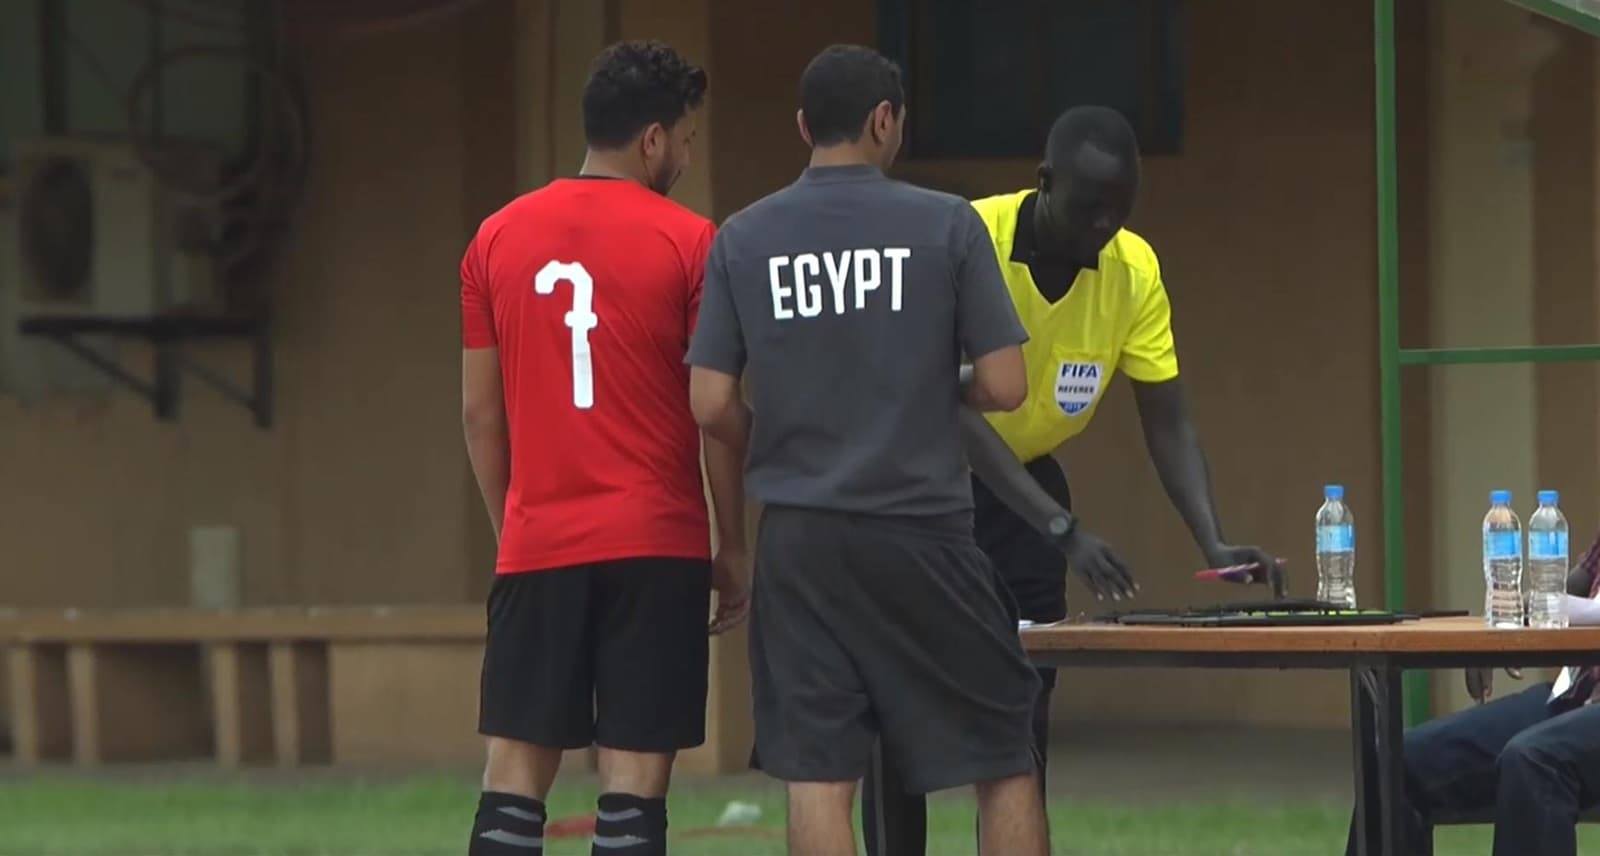 مباراة ضعيفة المستوى انتهت بالتعادل الايجابي 1-1 بين مصر والنيجر